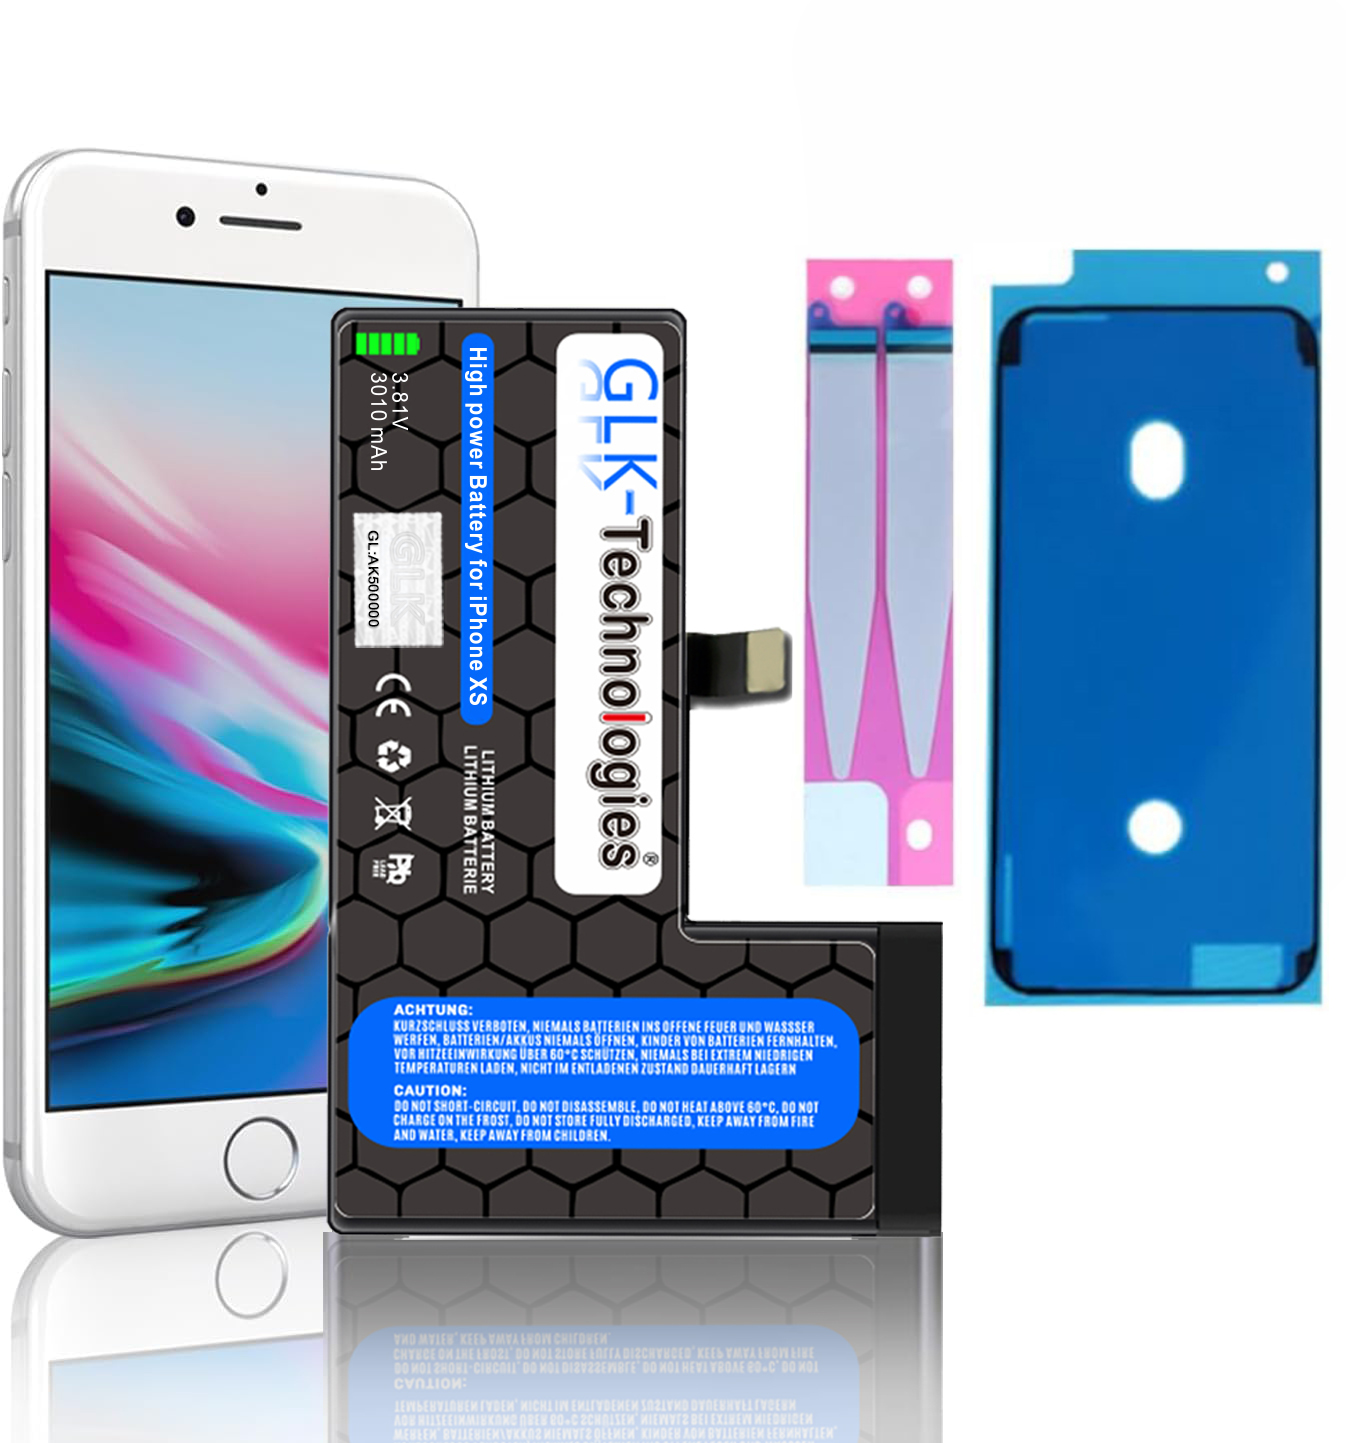 Volt, Smartphone Lithium-Ionen, Li-Ion 3.8 iPhone inkl. 2X 2740mAh Ersatz XS Apple Klebebandsätze Akku, GLK-TECHNOLOGIES